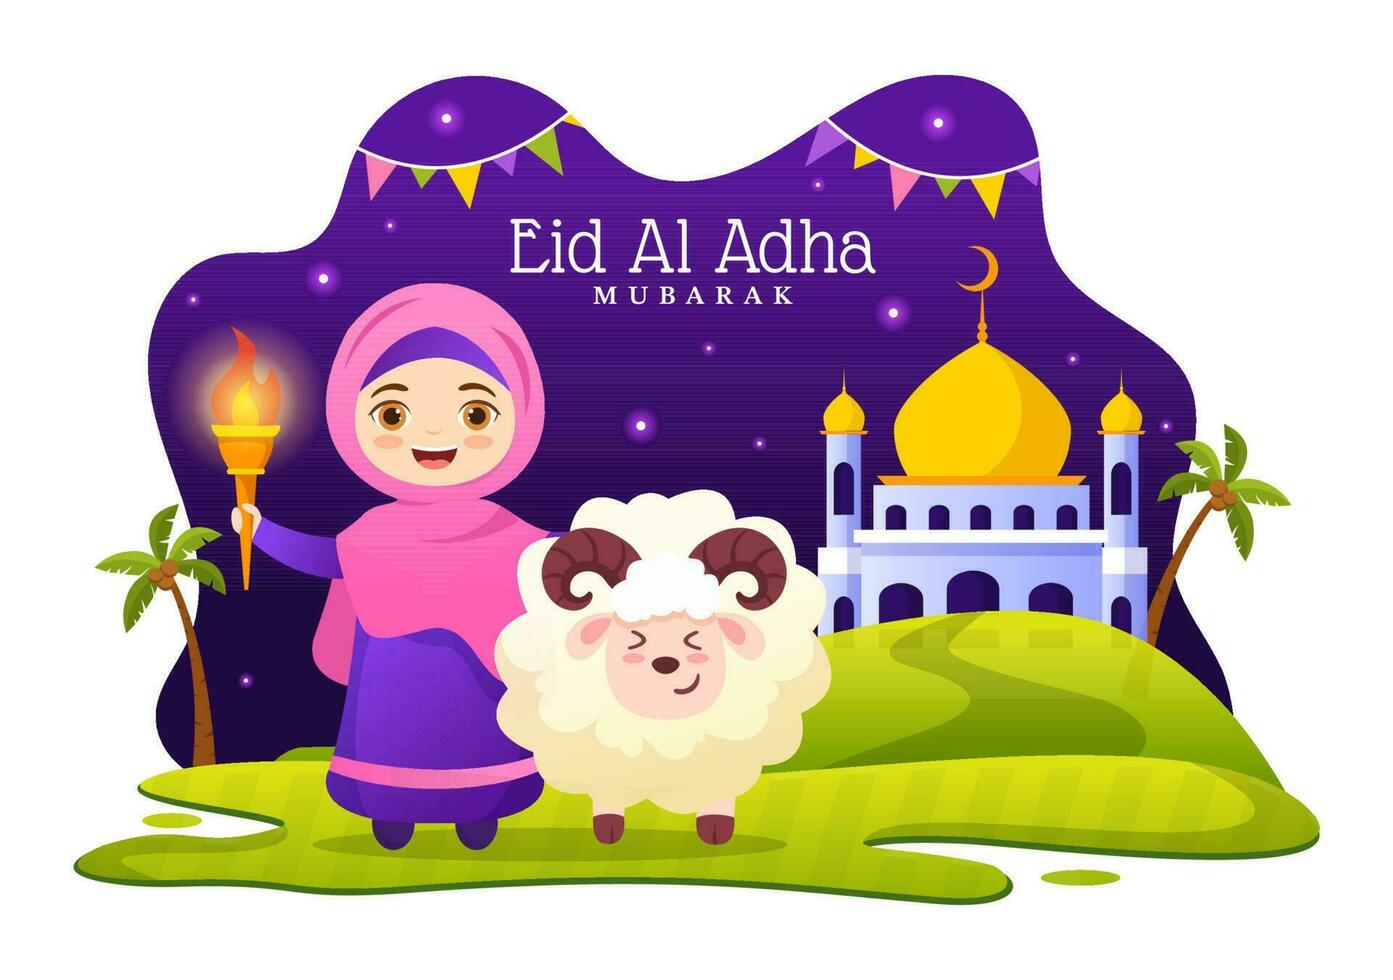 content eid Al adha mubarak vecteur illustration de des gamins les musulmans fête avec sacrificiel animaux chèvre et vache dans dessin animé main tiré modèles